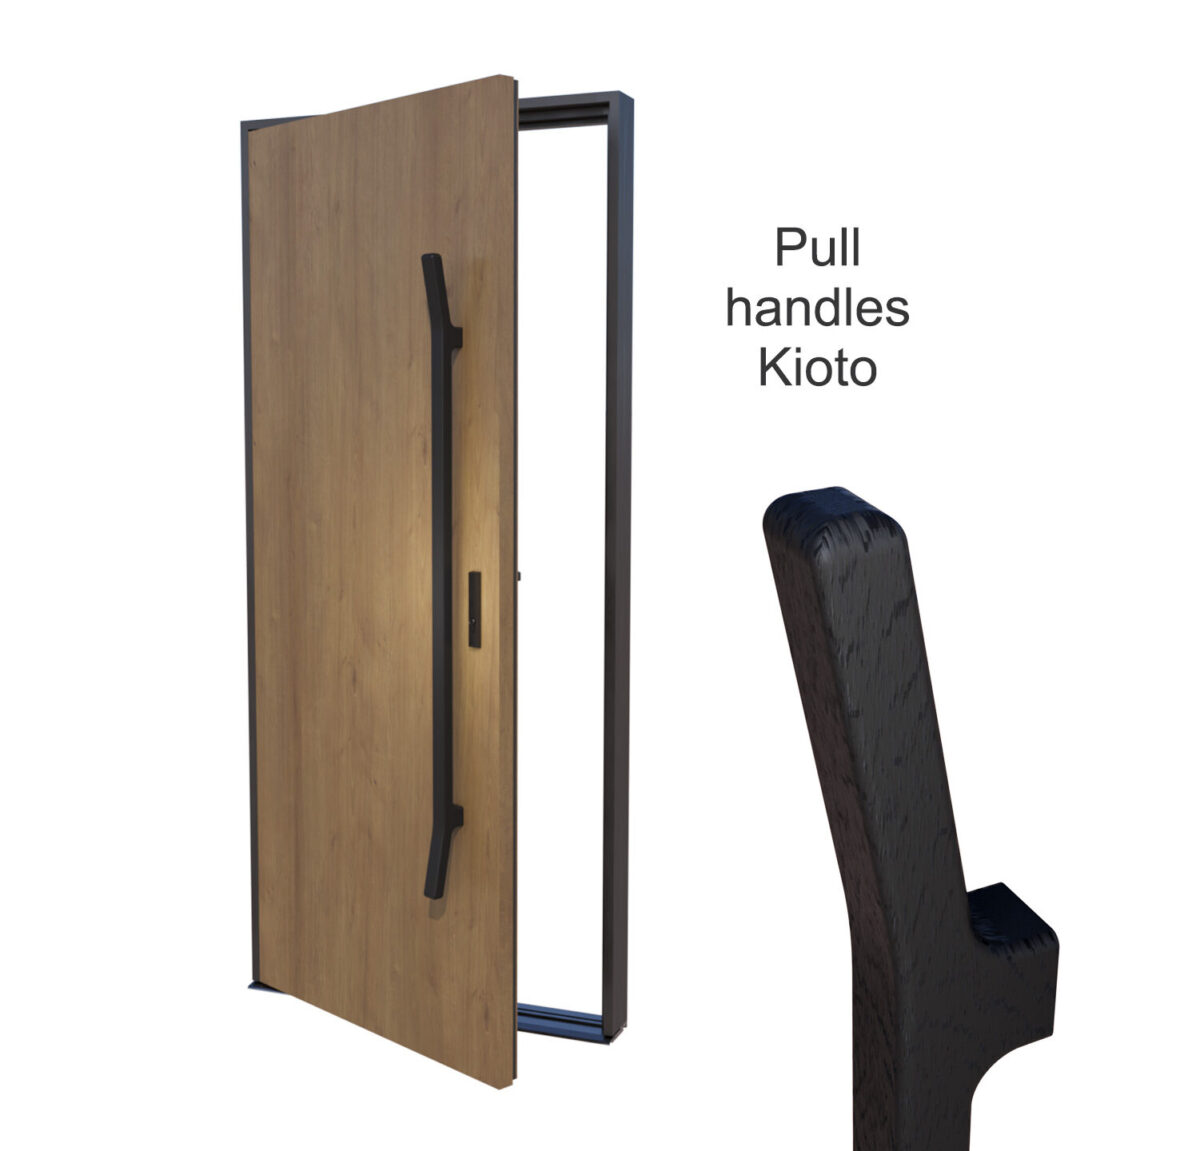 Wooden handles for large doors Kioto